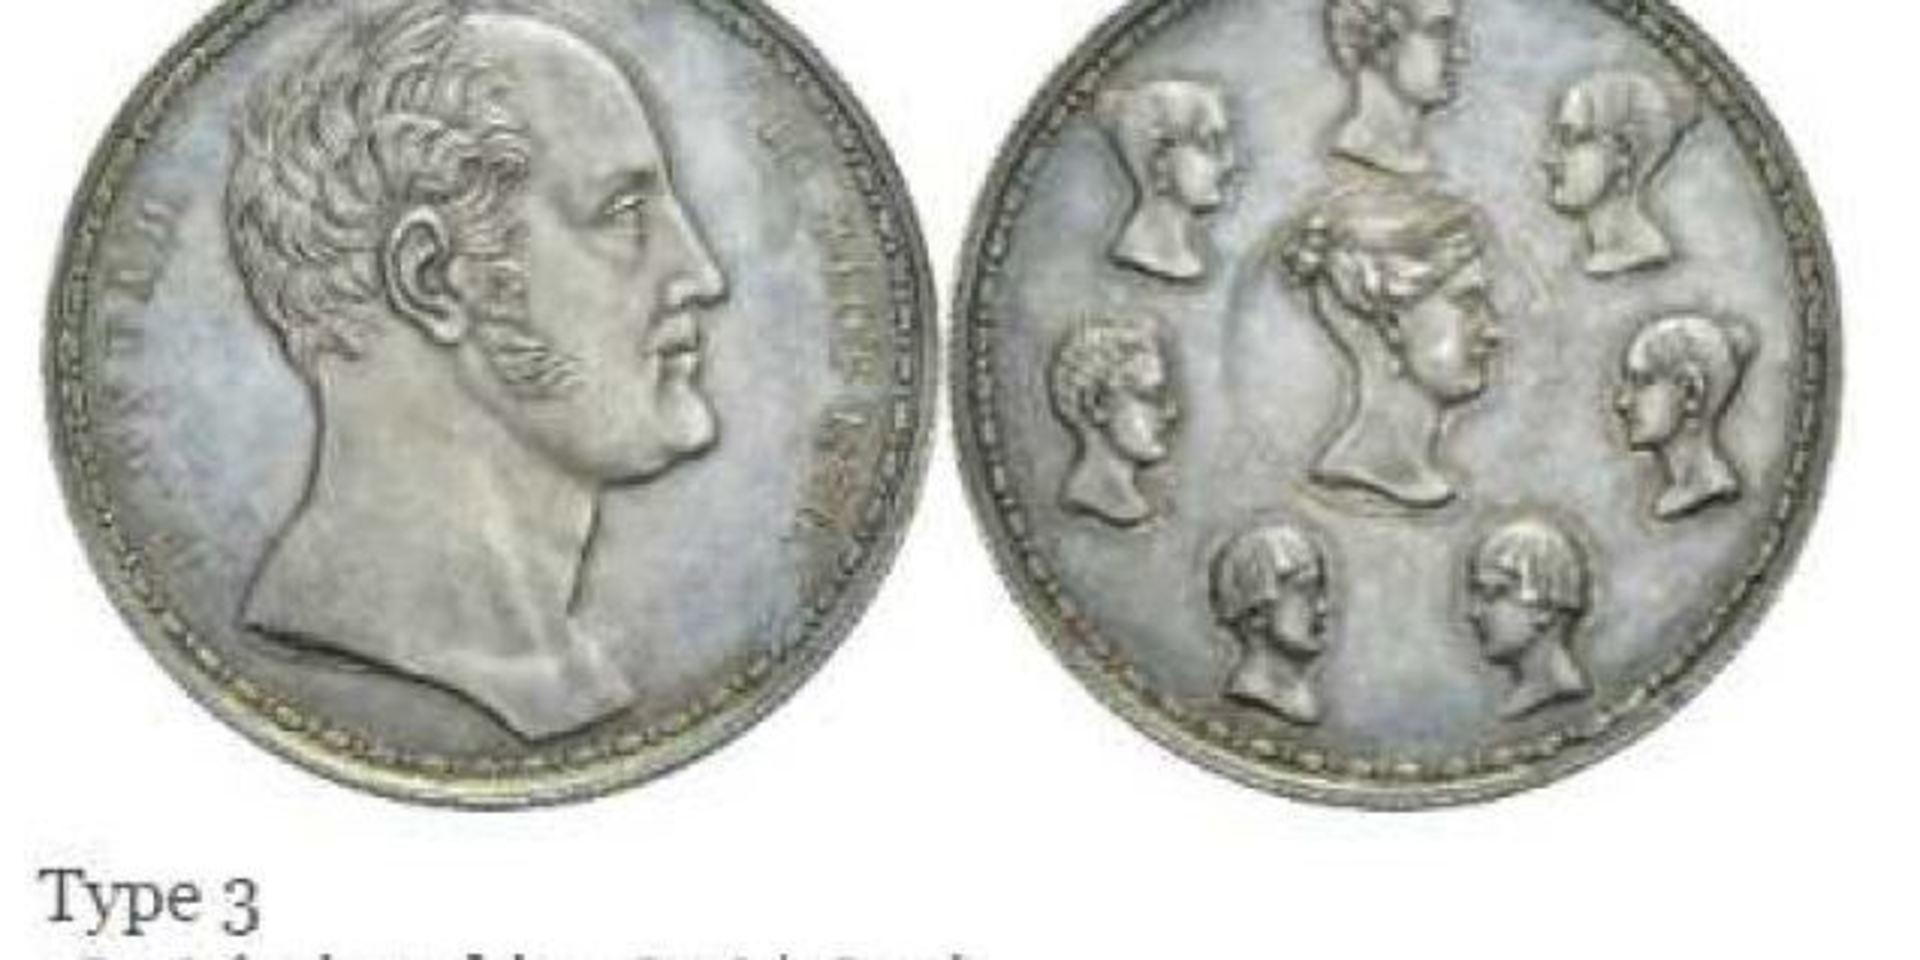 Mannen som misstänktes för att ha sålt mynt från Kungliga myntkabinettet friades i tingsrätten. 